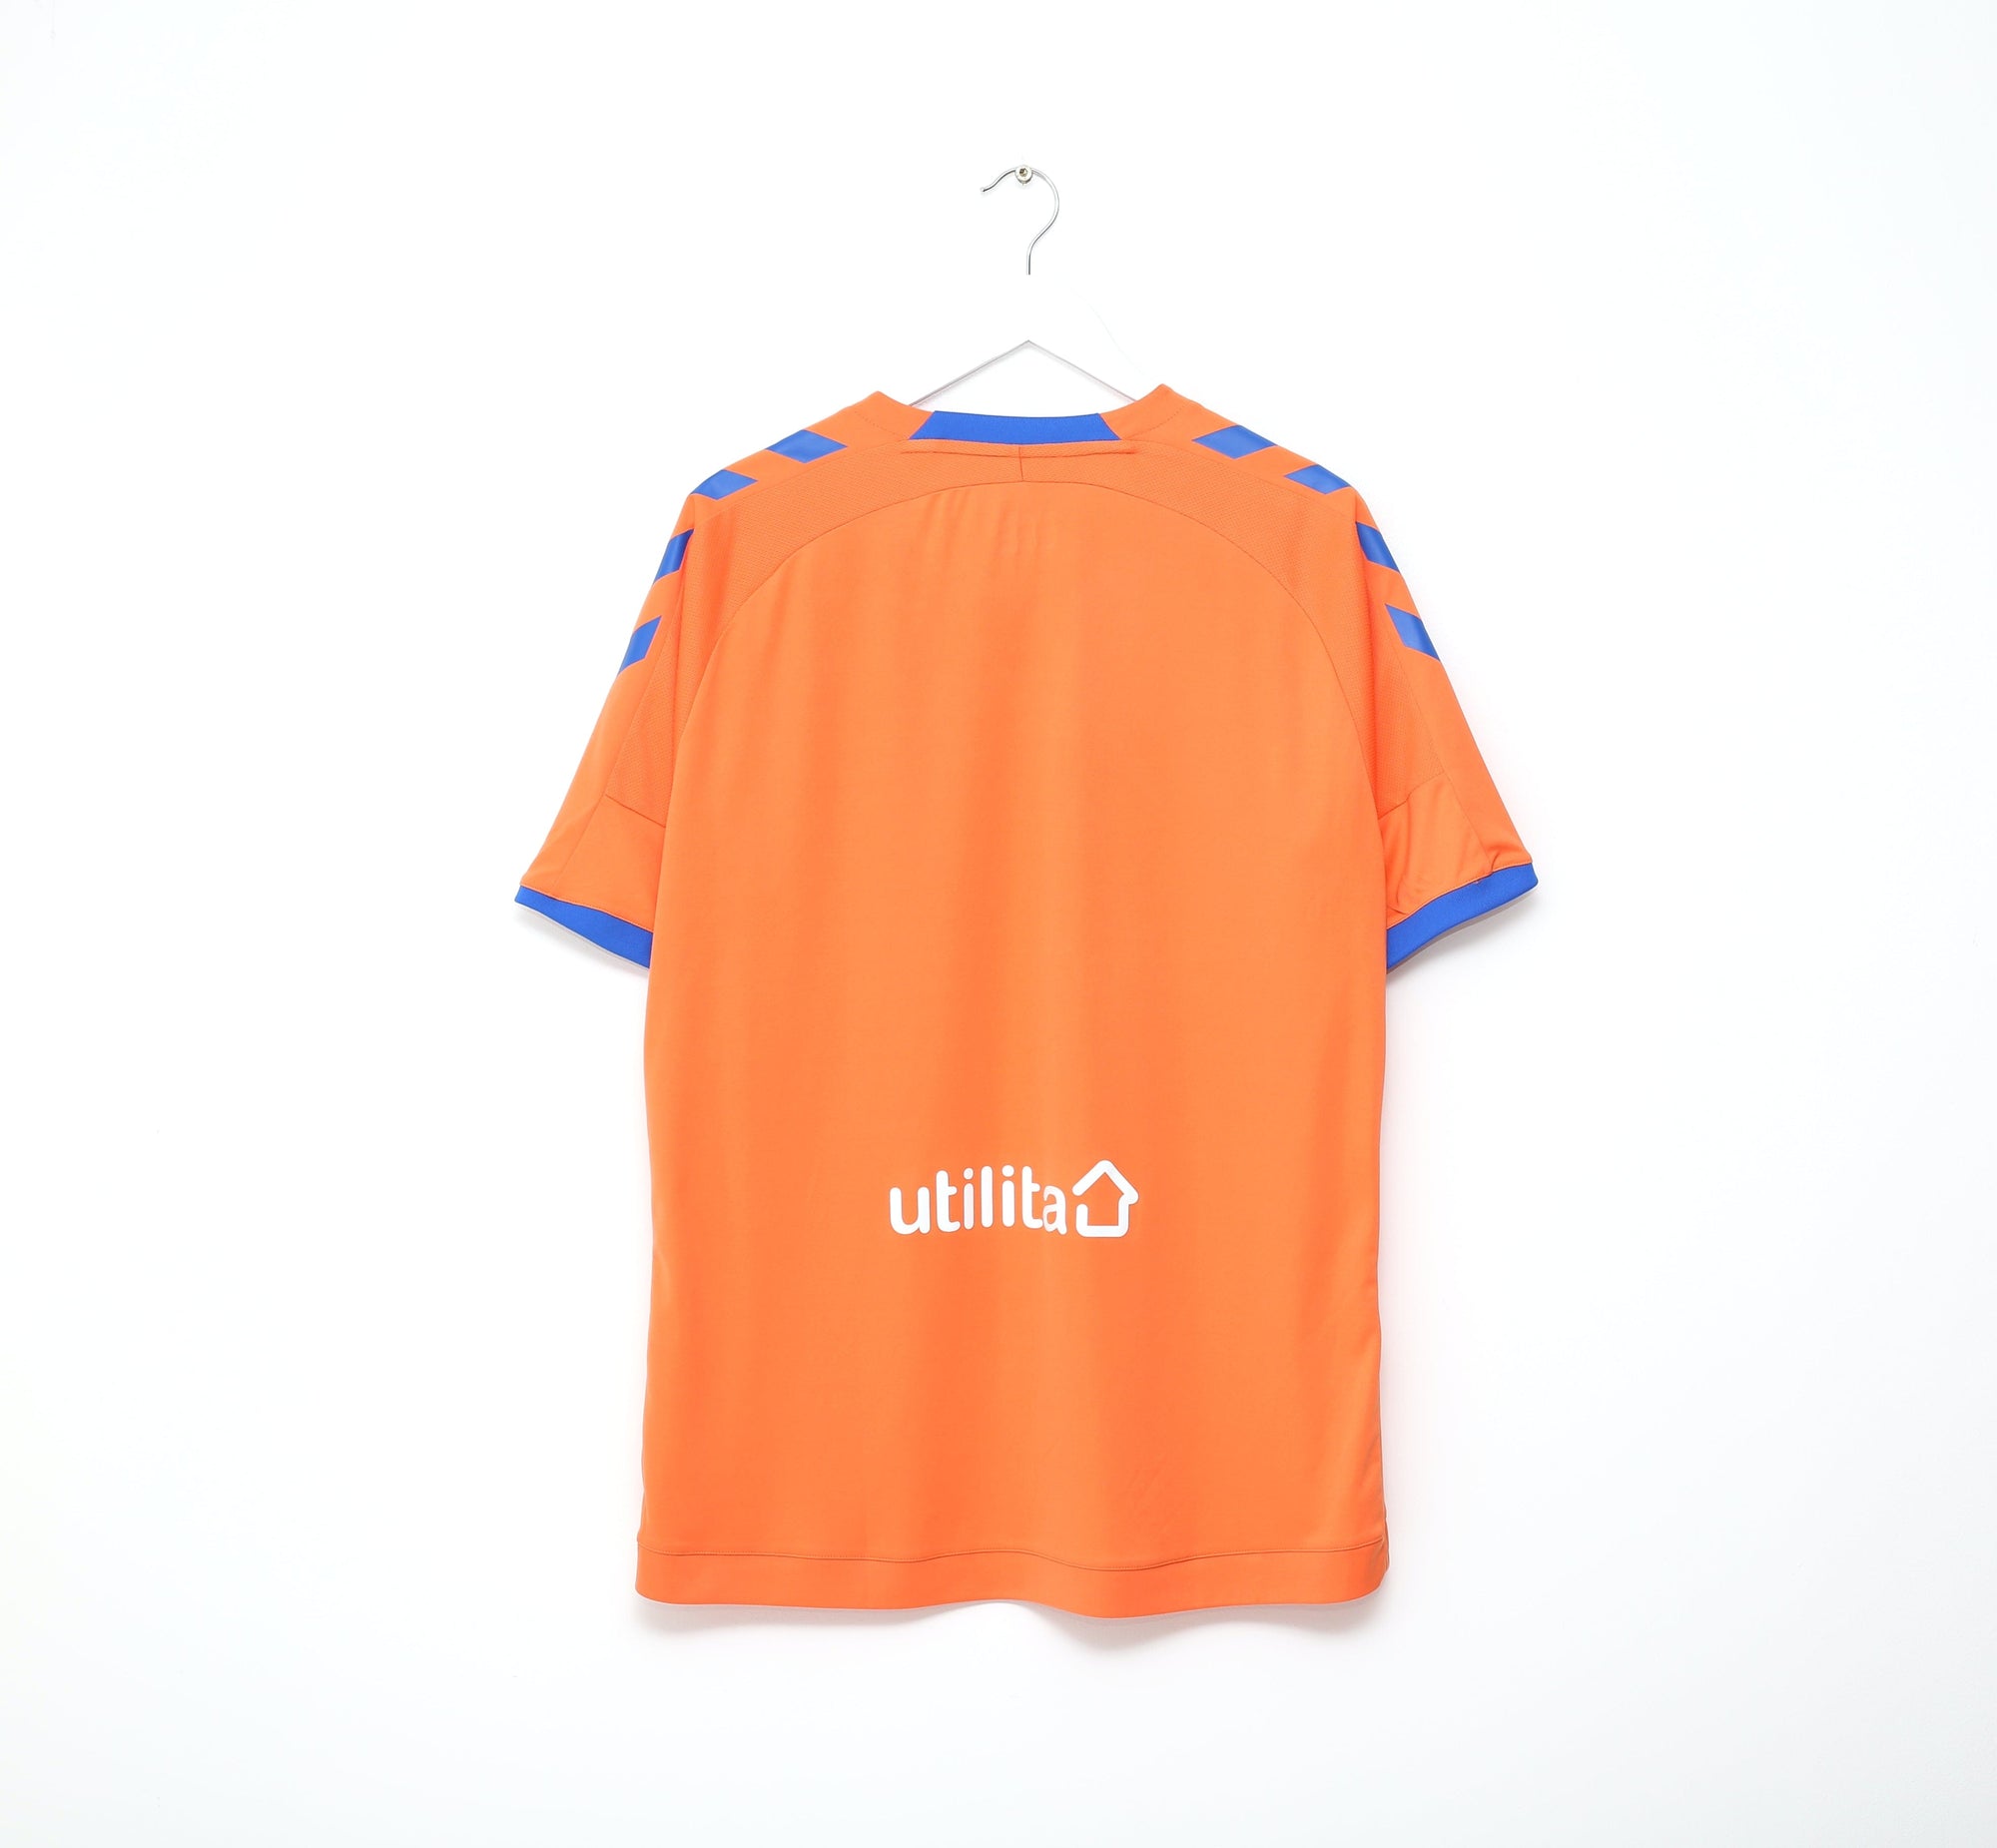 2018/19 RANGERS Hummel Third Football Shirt Jersey (L/XL) Mint